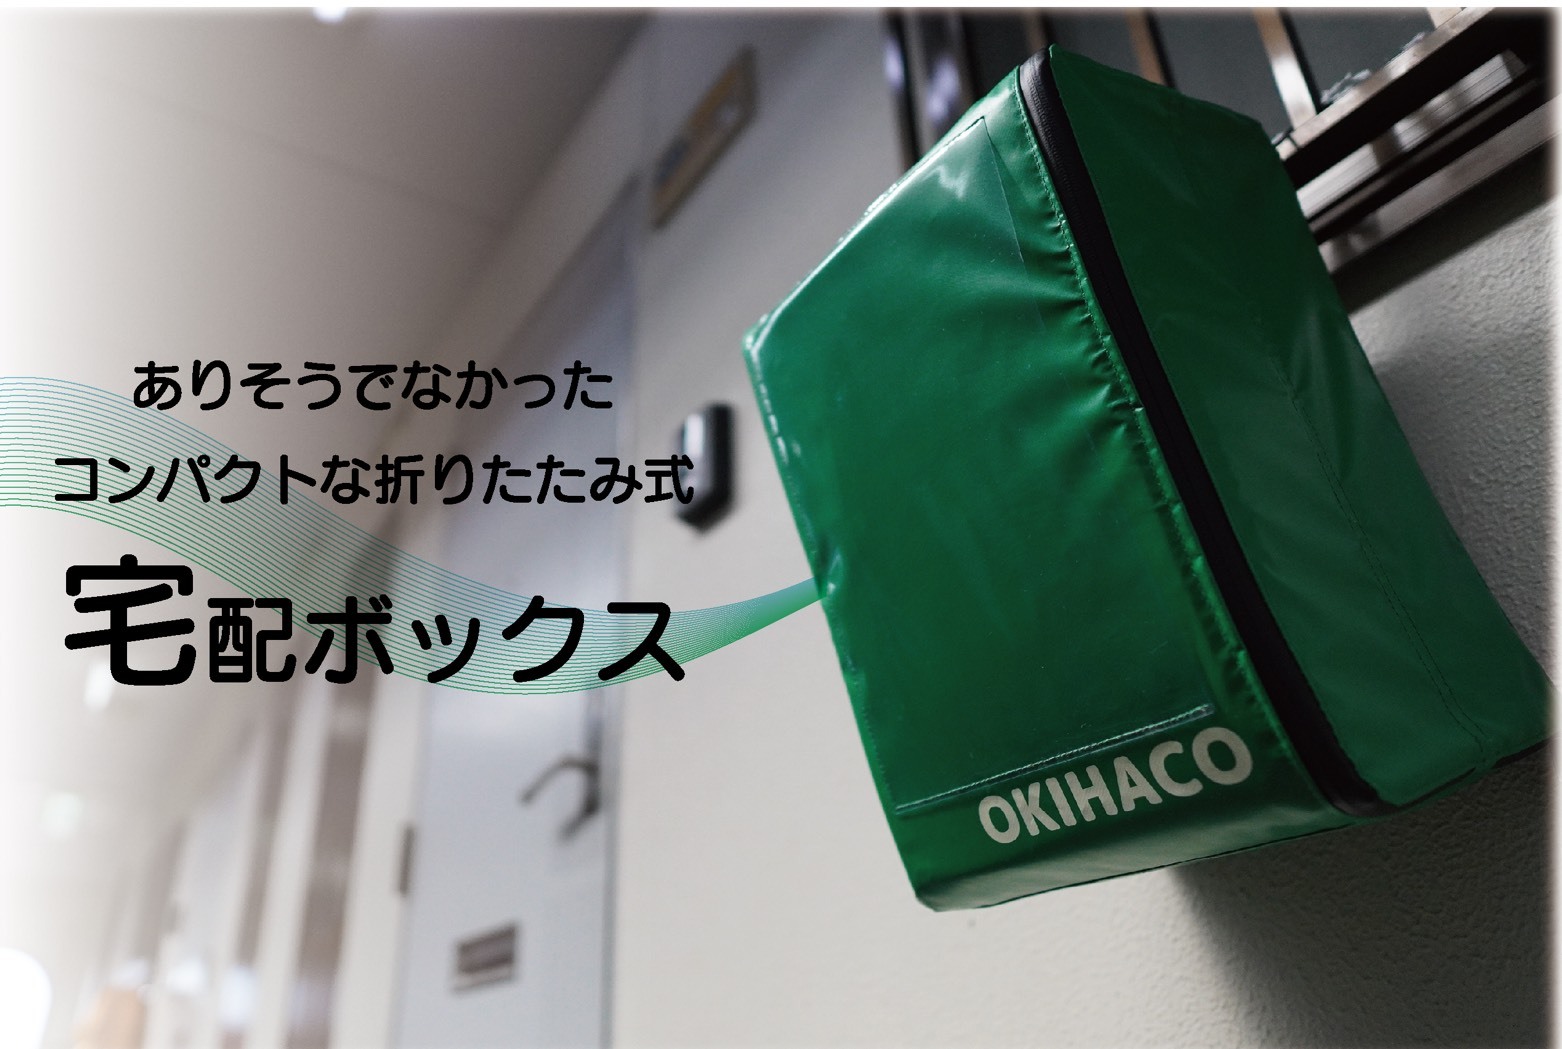 宅配ボックス『OKIHACO mini』がCAMPFIREにて発売！書籍類が曲げて投函